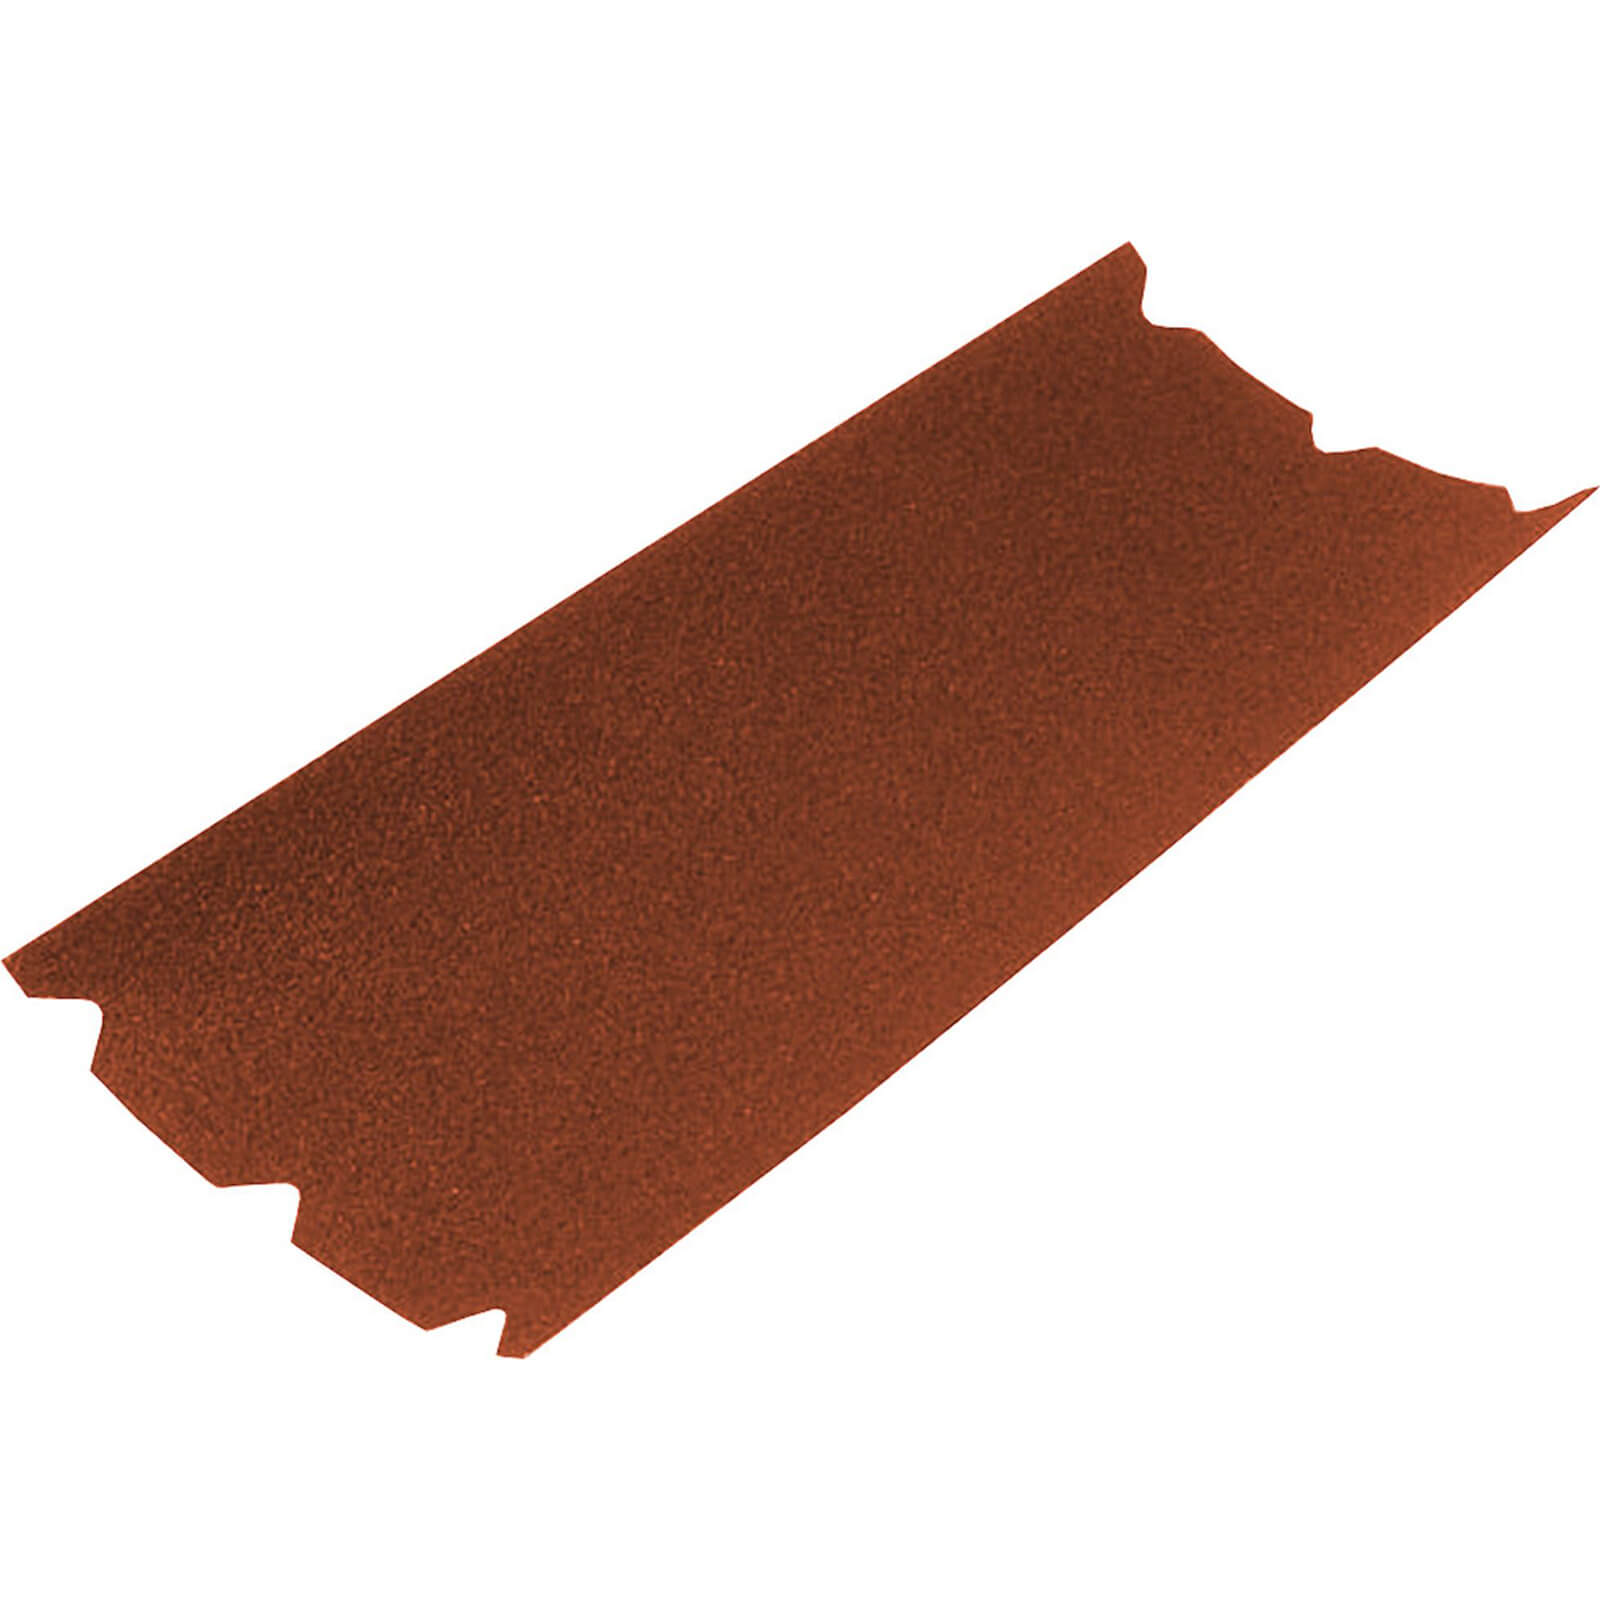 Image of Faithfull Floor Sanding Sheets 203mm x 475mm 120g Pack of 1